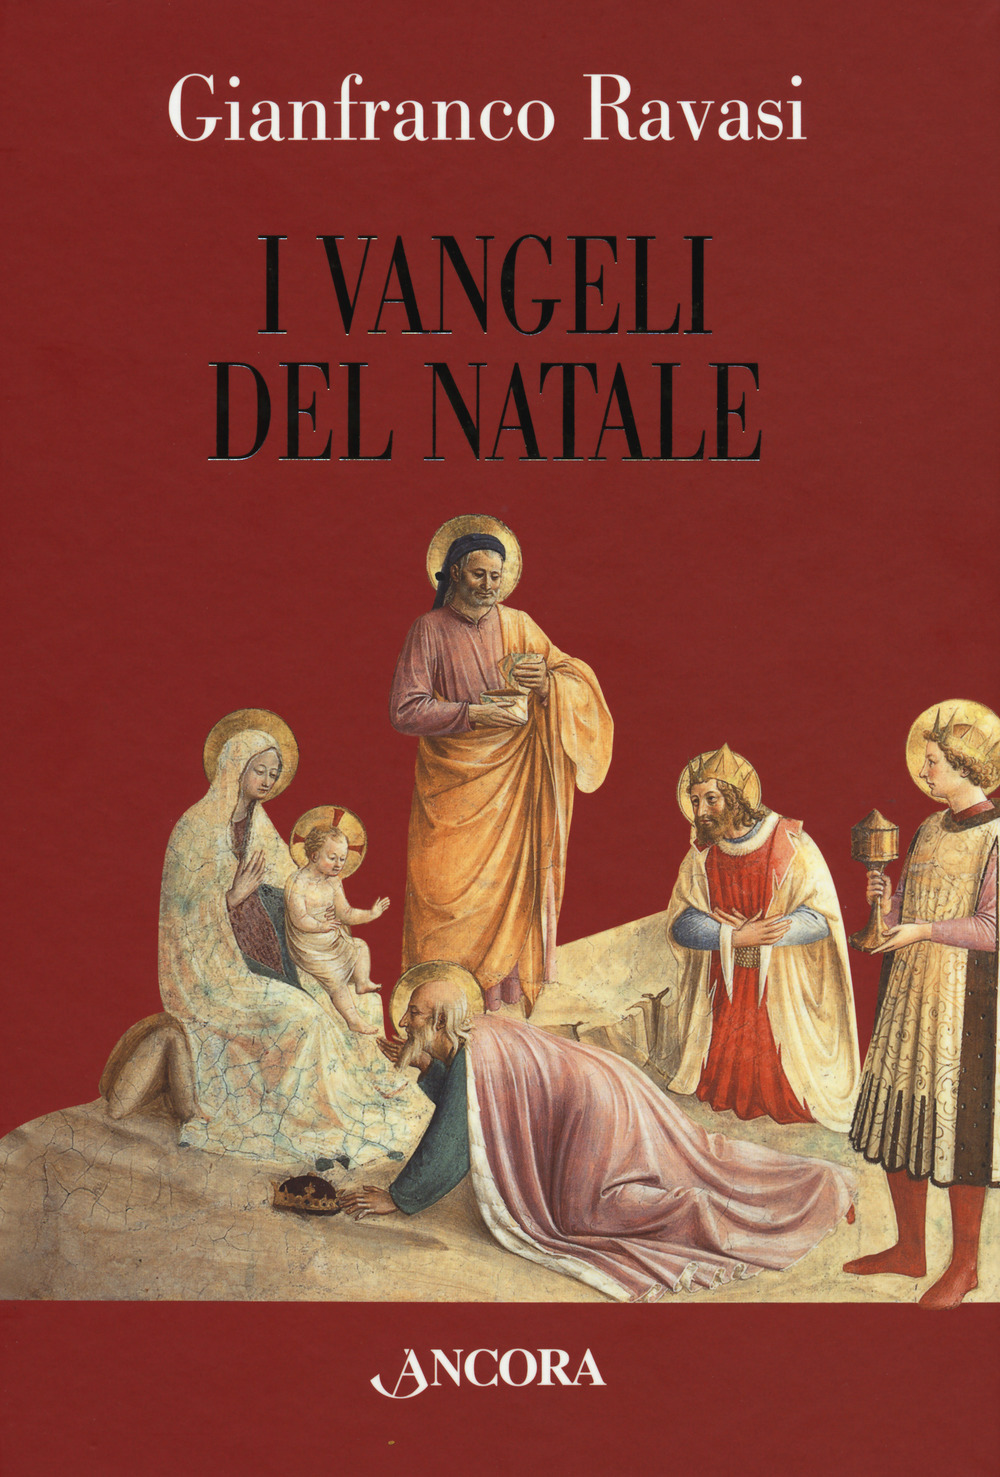 Libri Gianfranco Ravasi - I Vangeli Del Natale NUOVO SIGILLATO, EDIZIONE DEL 18/11/2009 SUBITO DISPONIBILE